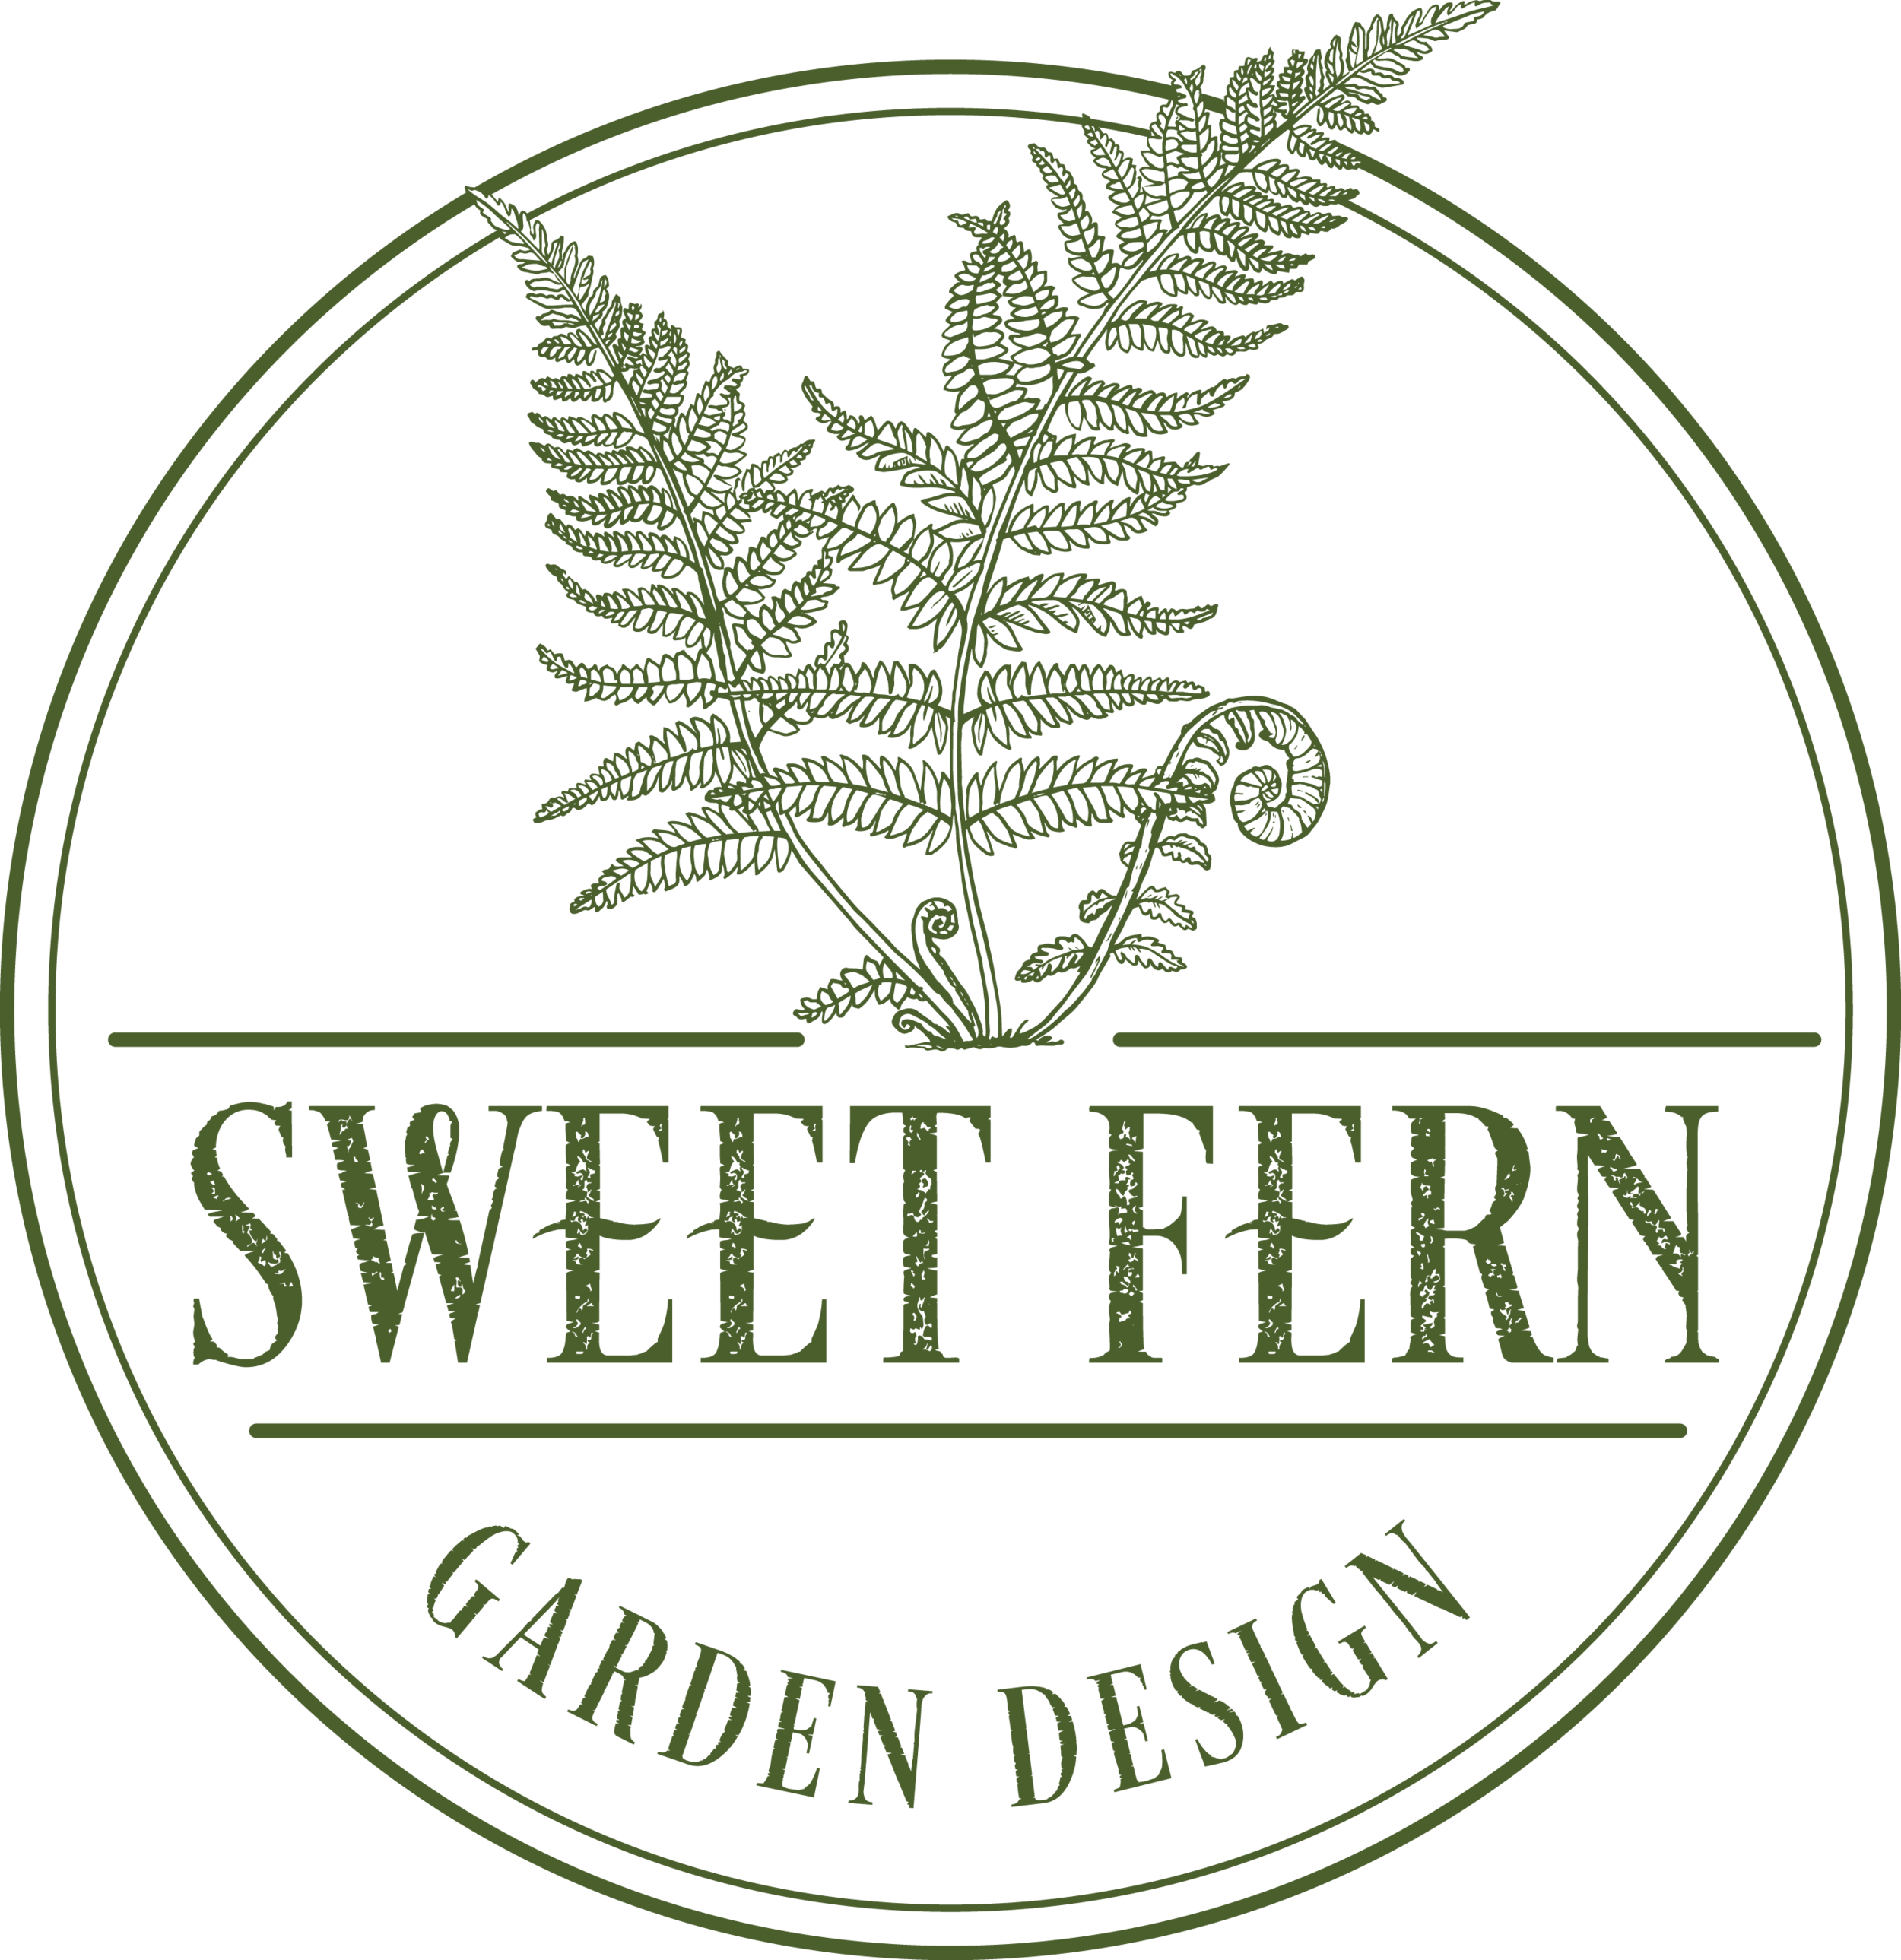 Sweetfern Garden Design